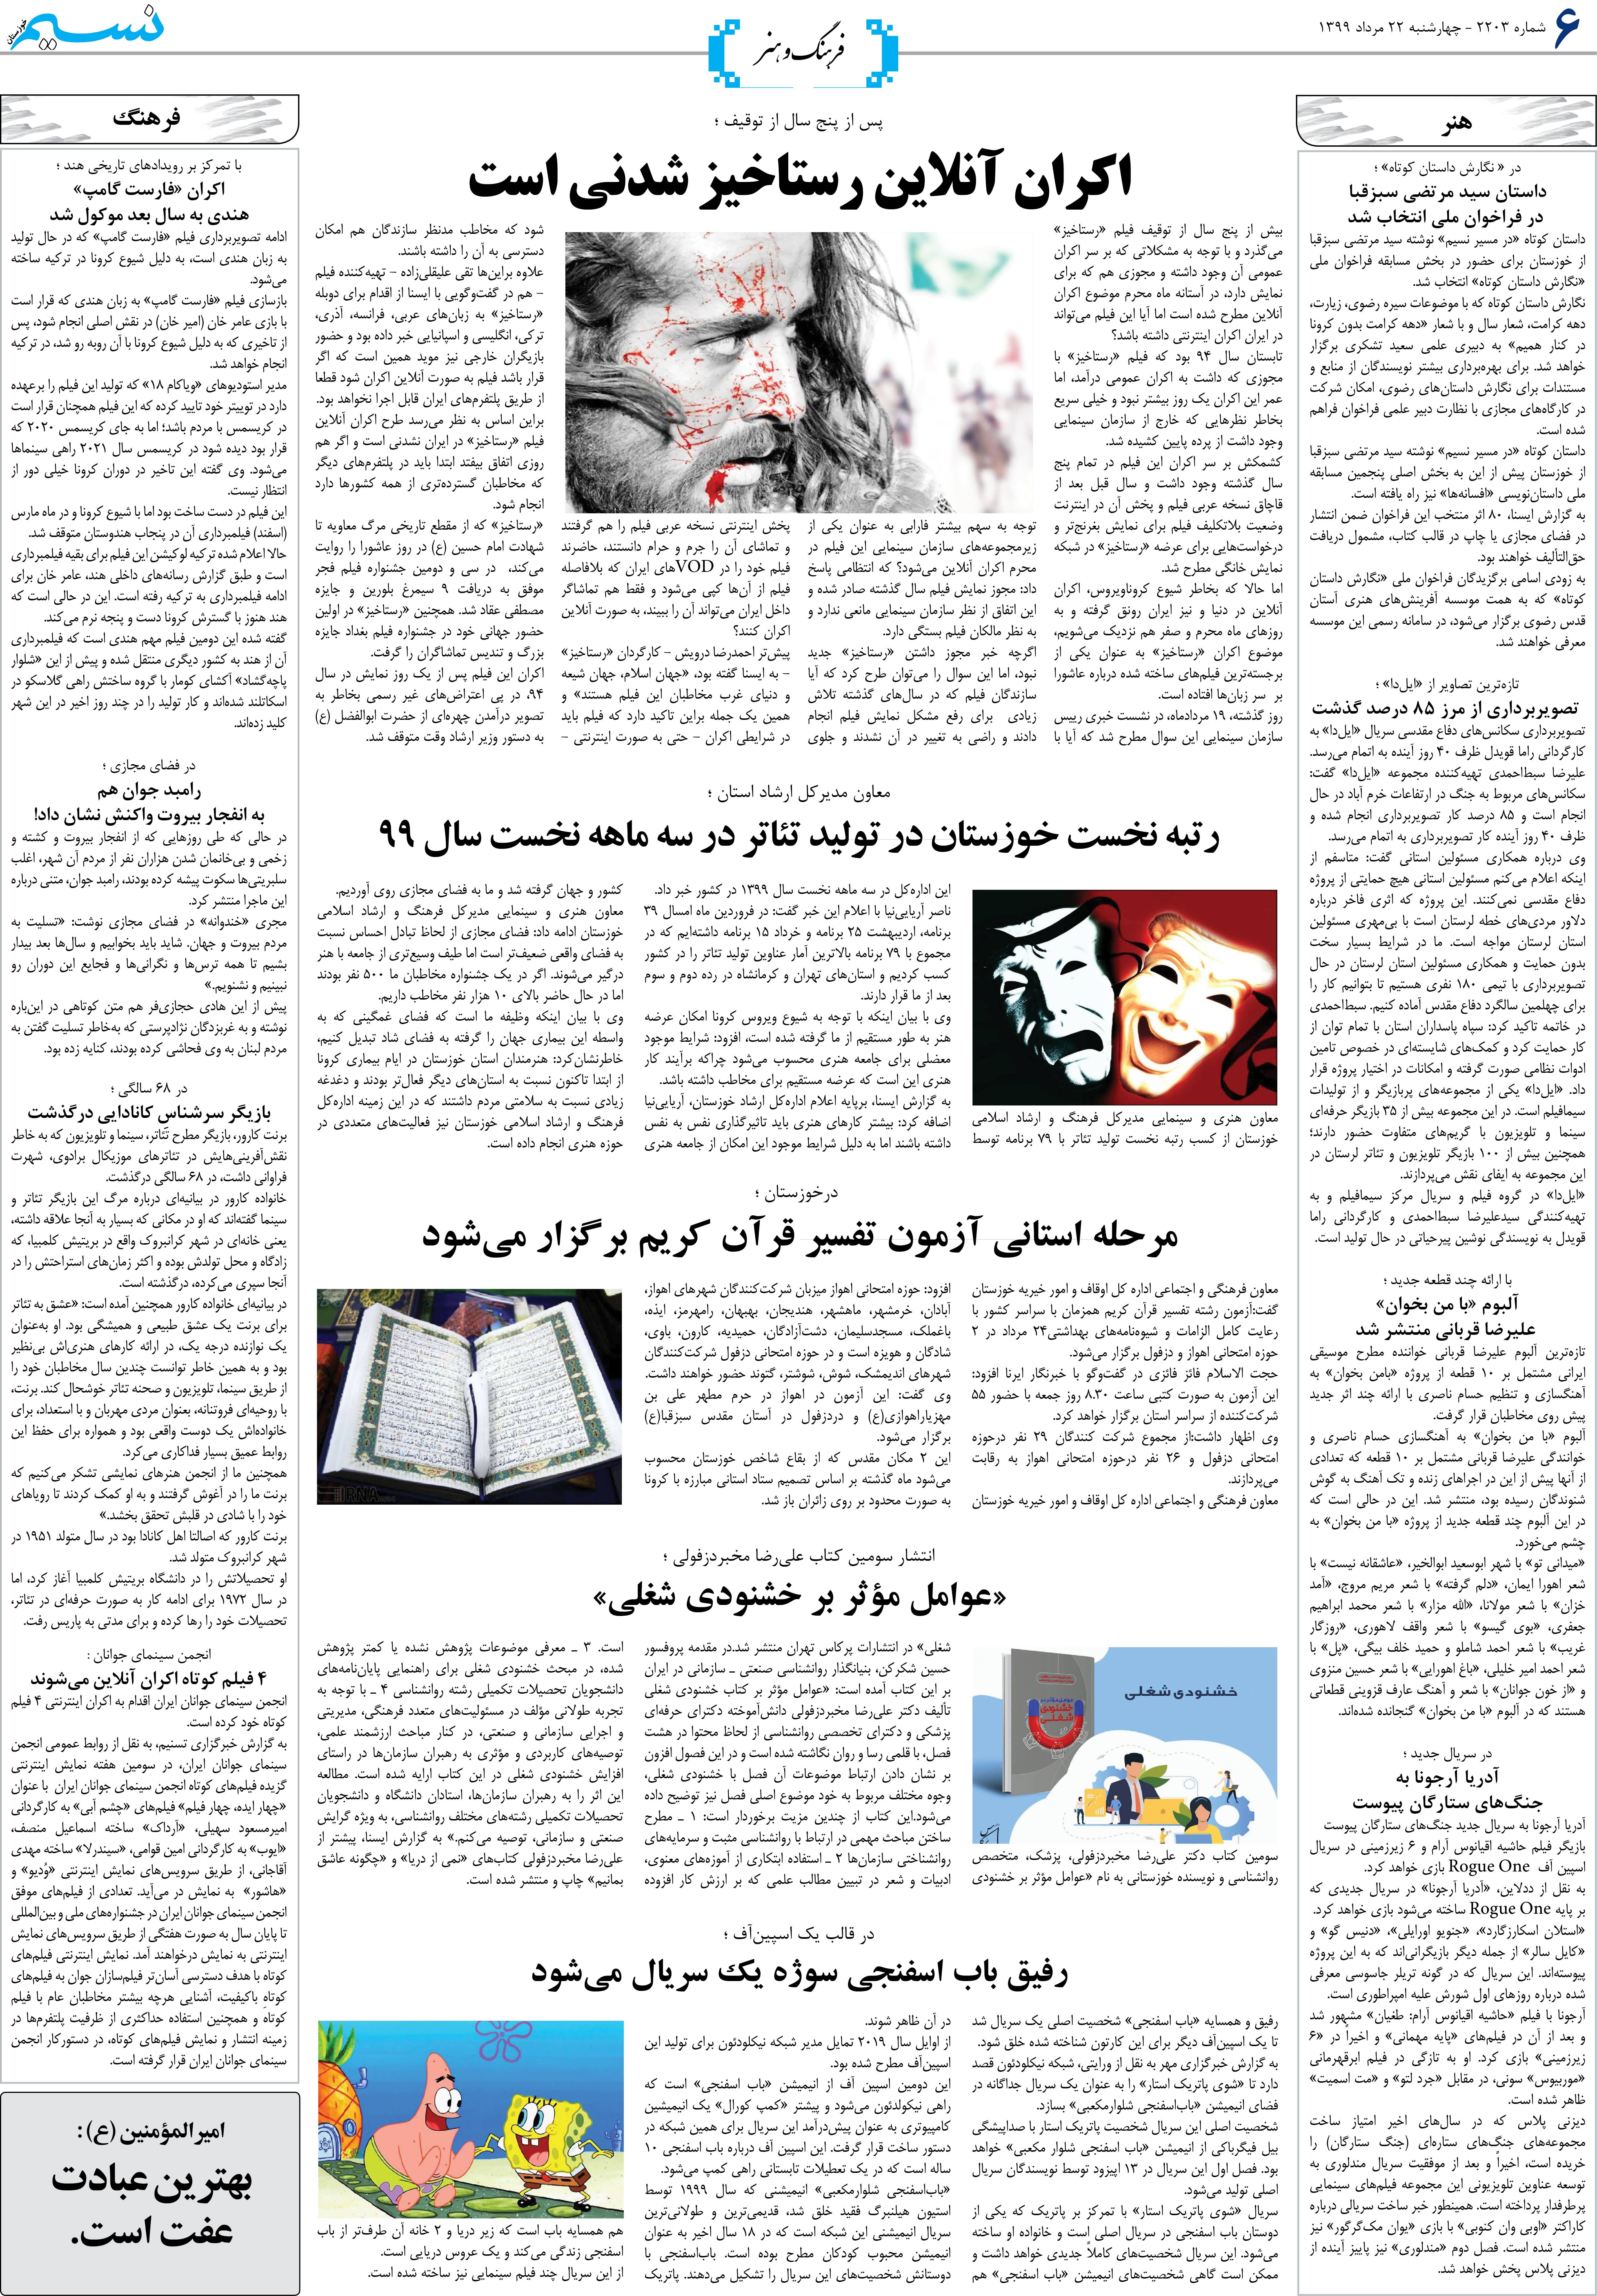 صفحه فرهنگ و هنر روزنامه نسیم شماره 2203